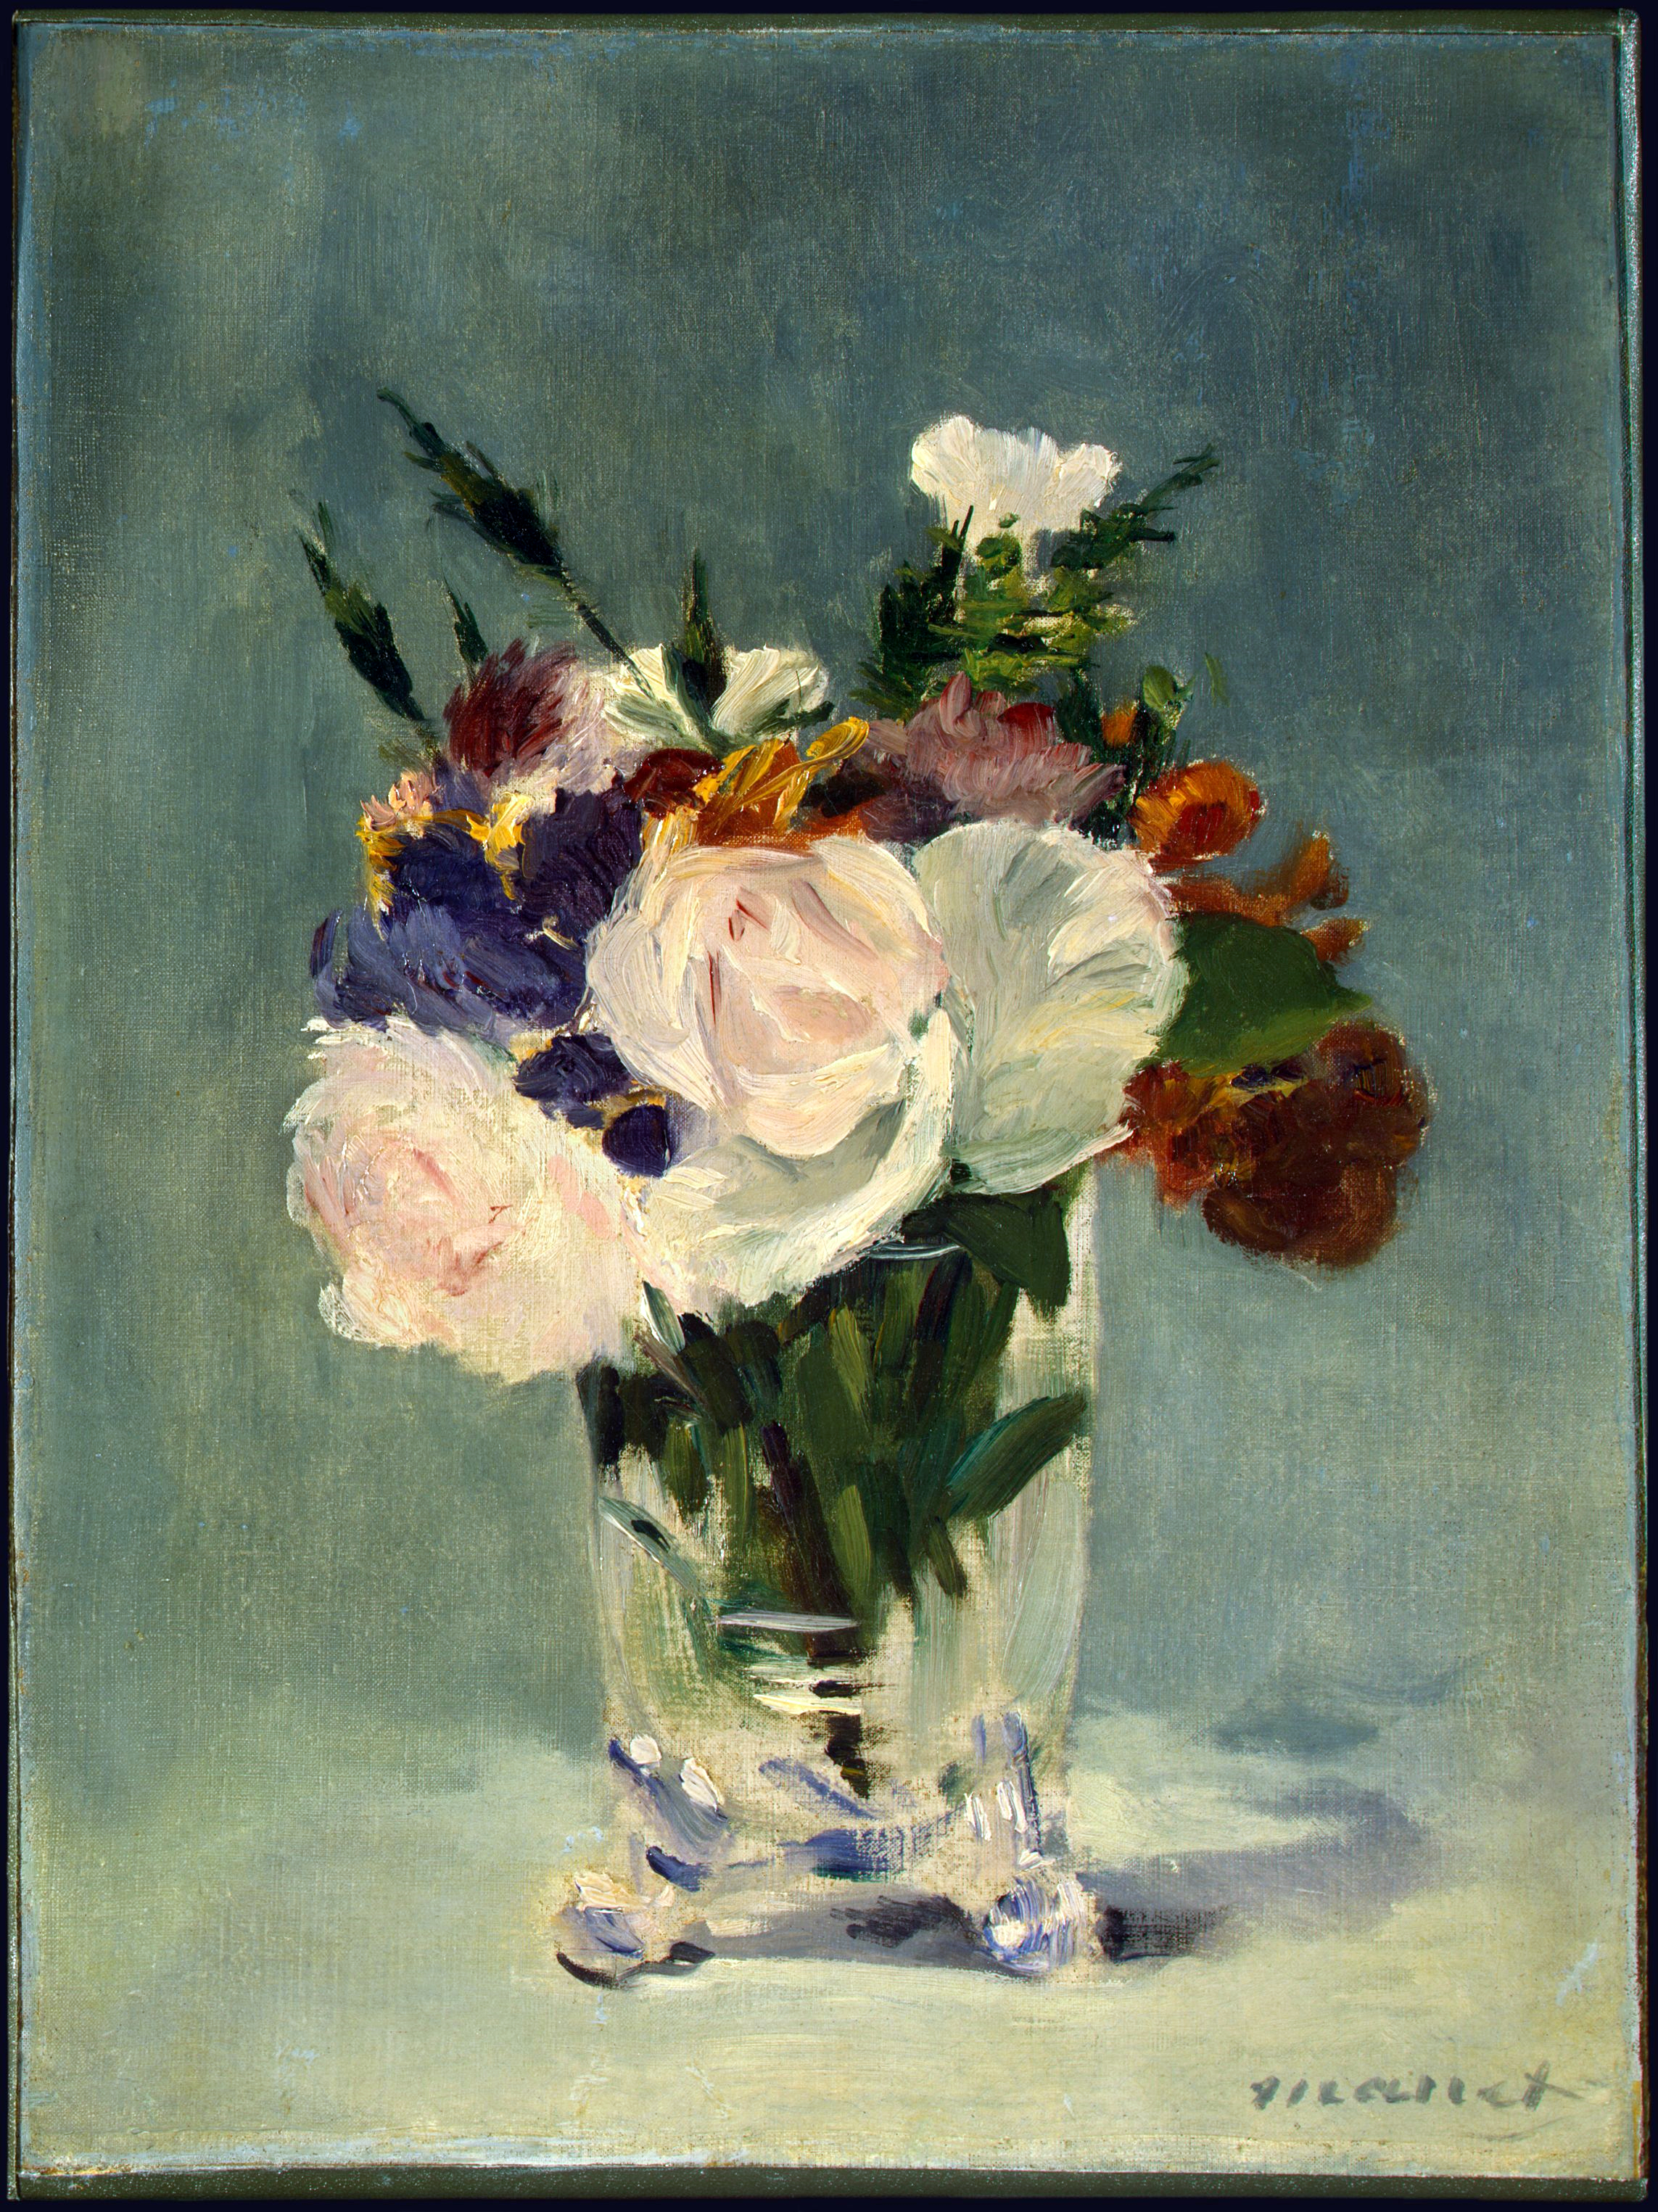 Flores en un jarrón de crisal by Édouard Manet - c. 1882 National Gallery of Art